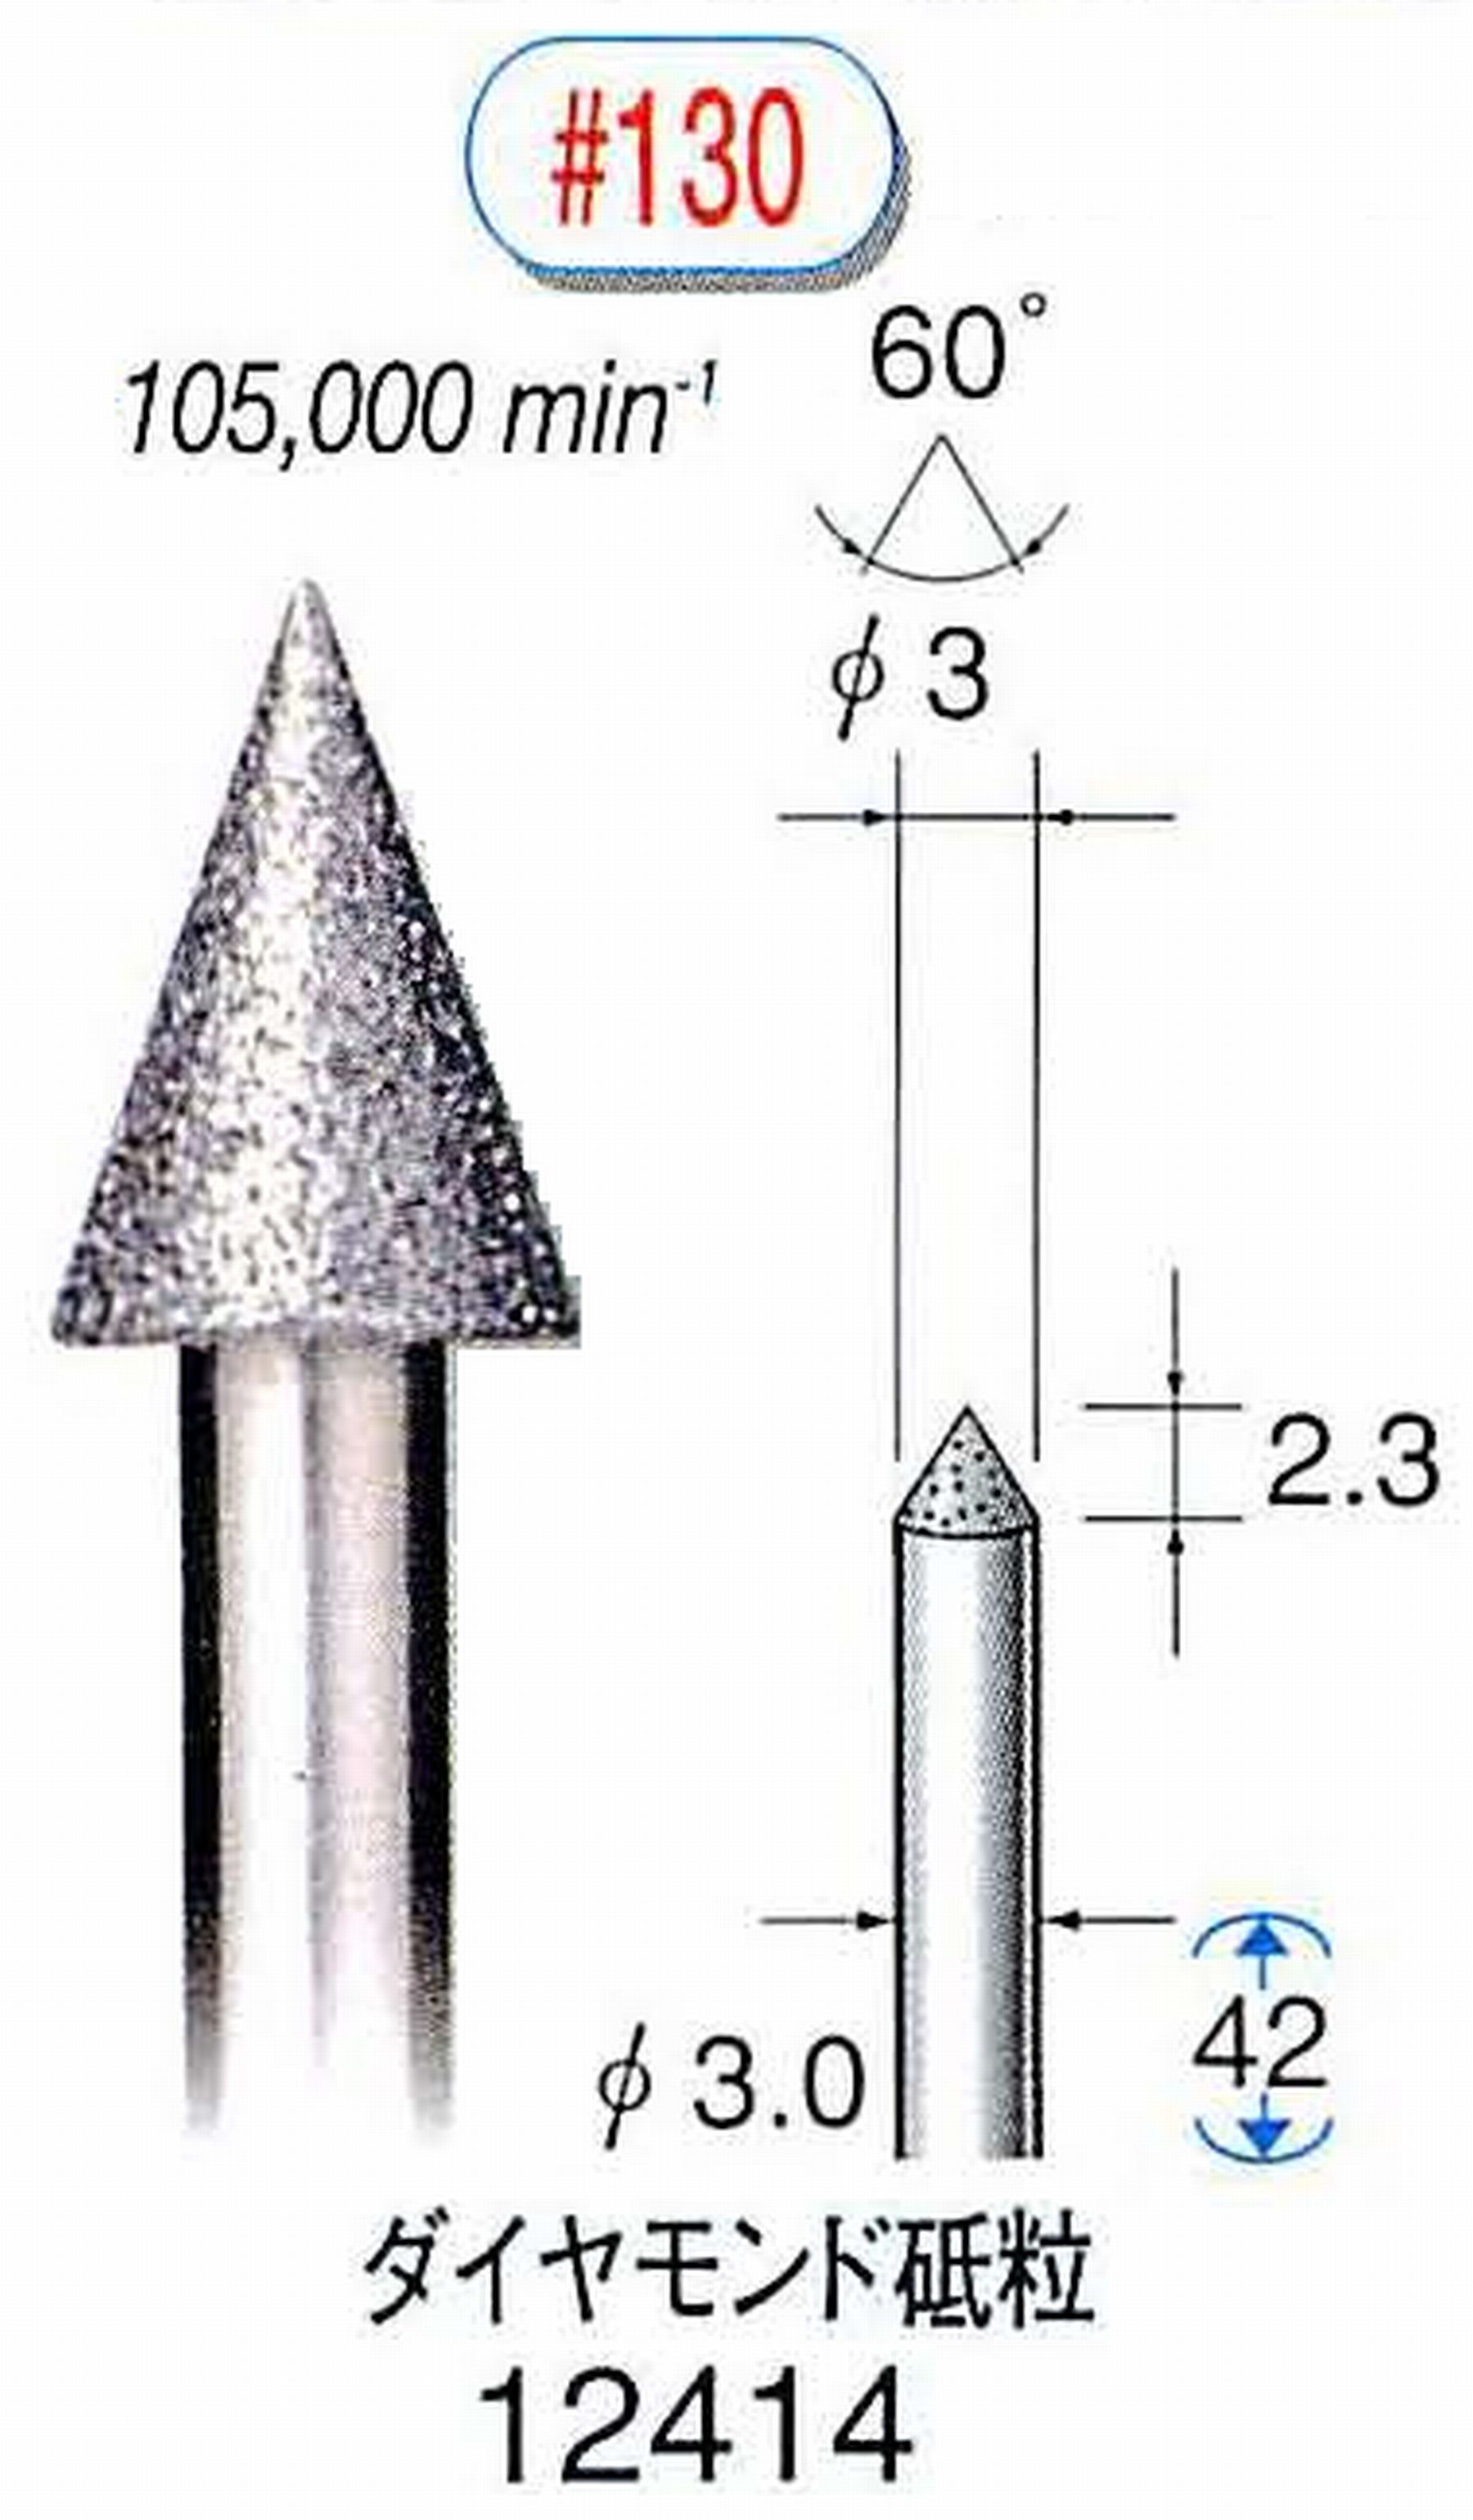 ナカニシ/NAKANISHI 電着ダイヤモンド ダイヤモンド砥粒 軸径(シャンク)φ3.0mm 12414